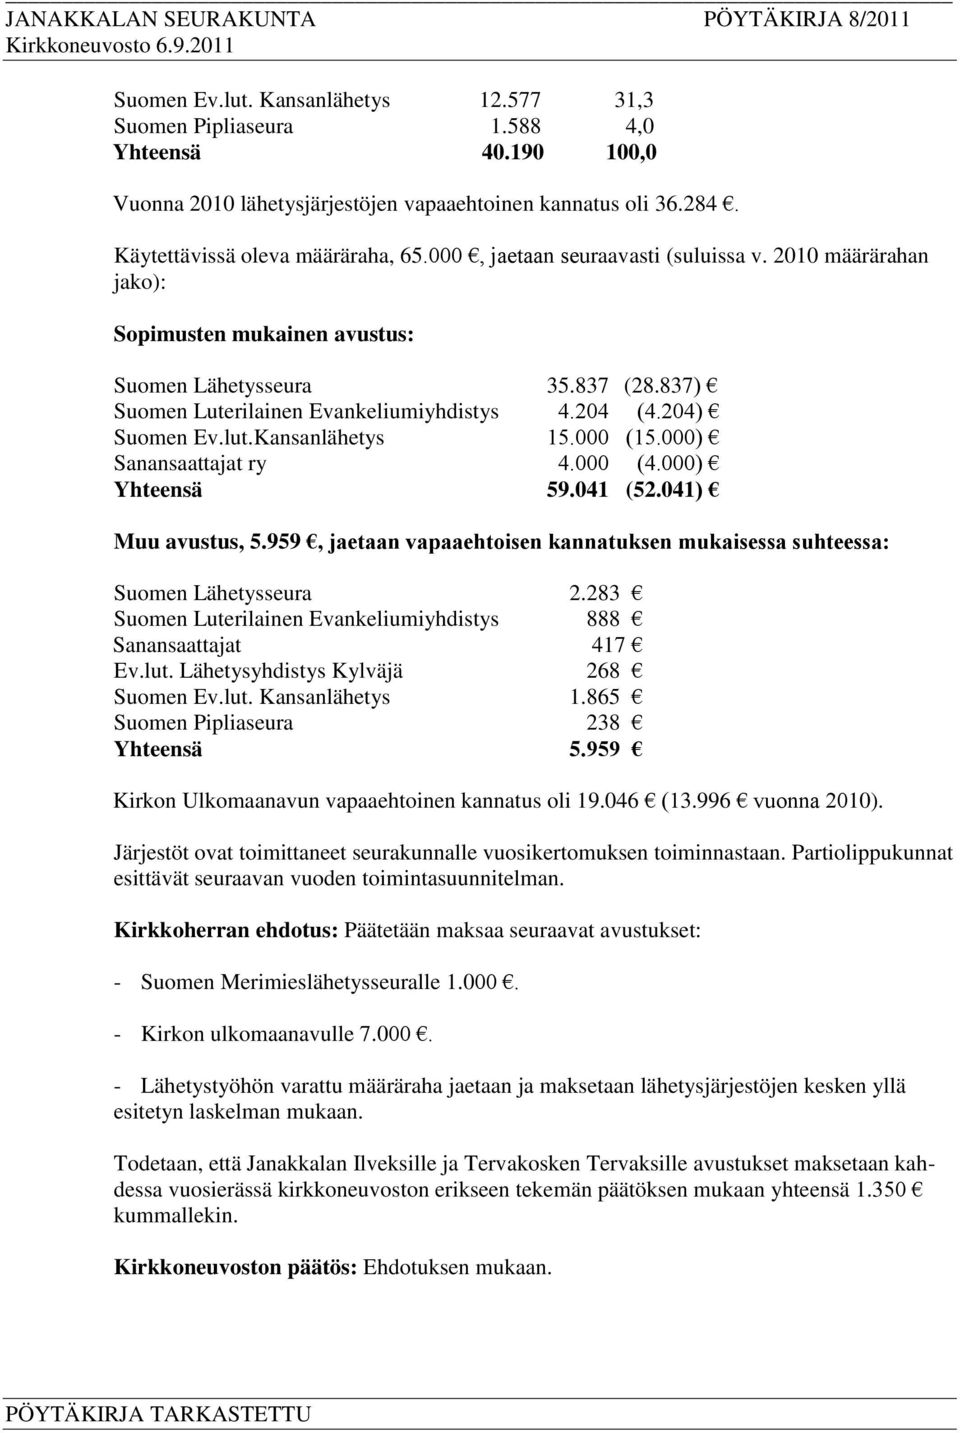 Kansanlähetys 15.000 (15.000) Sanansaattajat ry 4.000 (4.000) Yhteensä 59.041 (52.041) Muu avustus, 5.959, jaetaan vapaaehtoisen kannatuksen mukaisessa suhteessa: Suomen Lähetysseura 2.